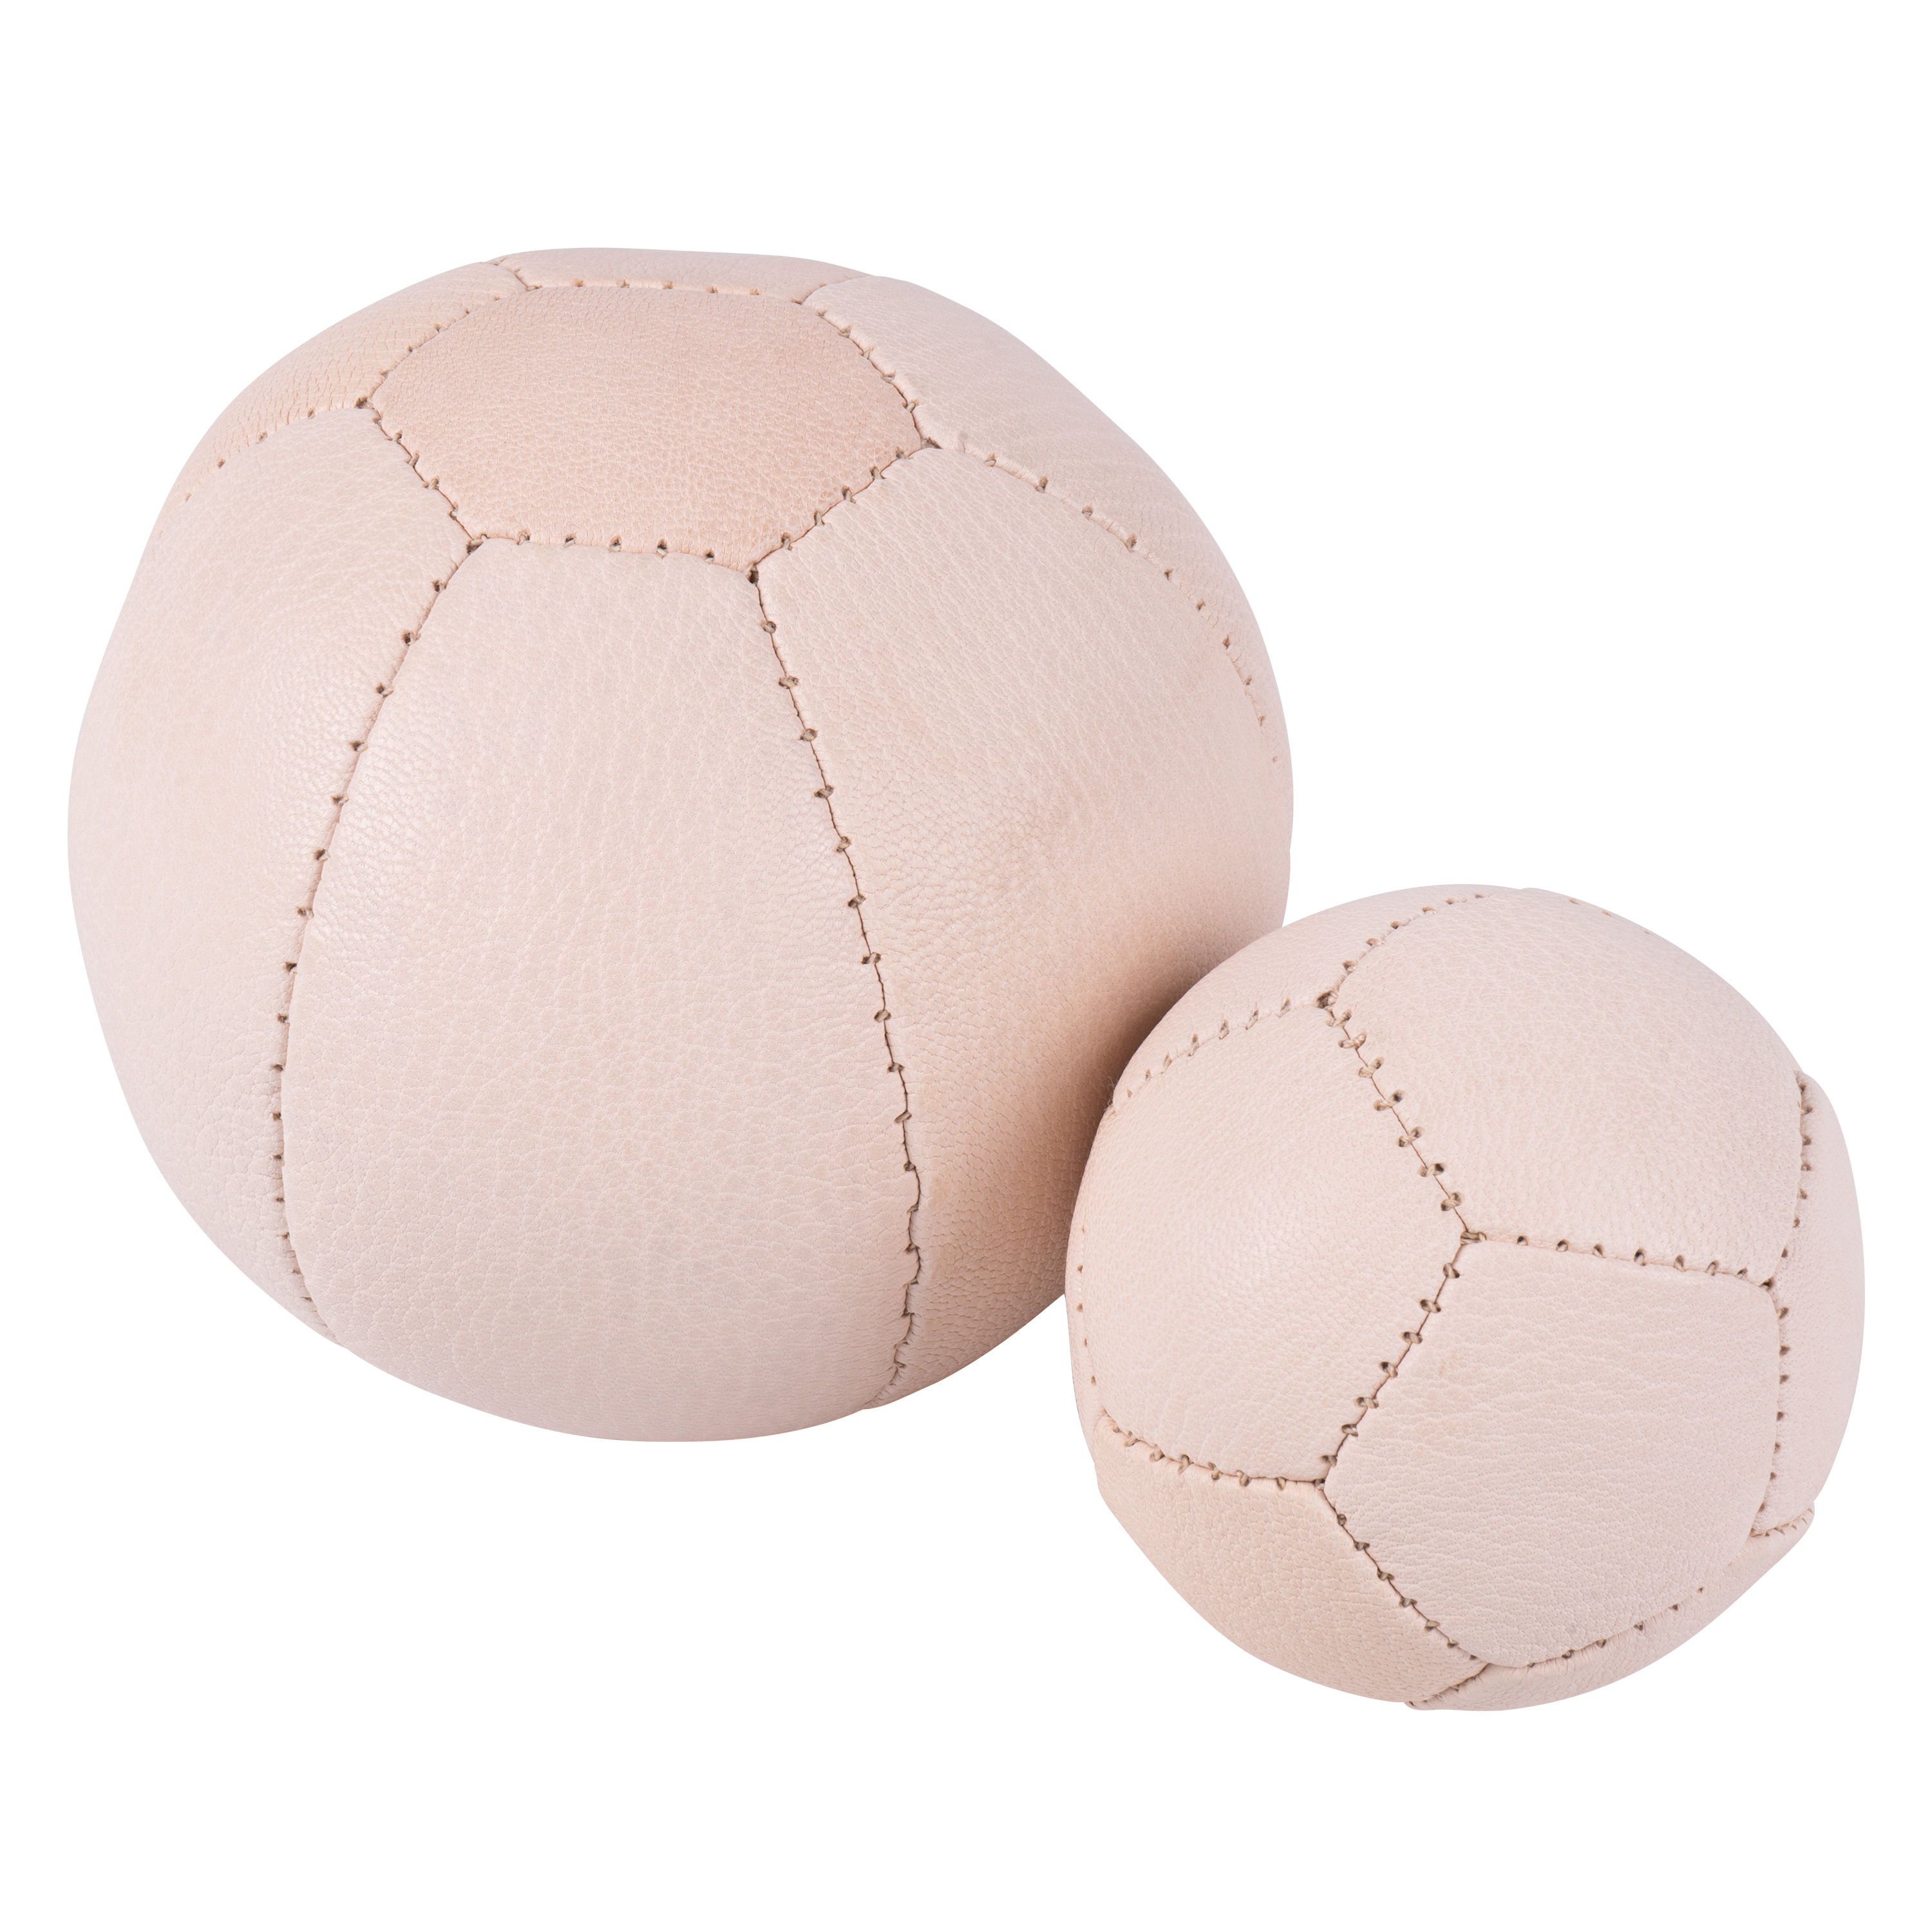 Gymnastikball aus Ziegenleder, Ø 14 cm